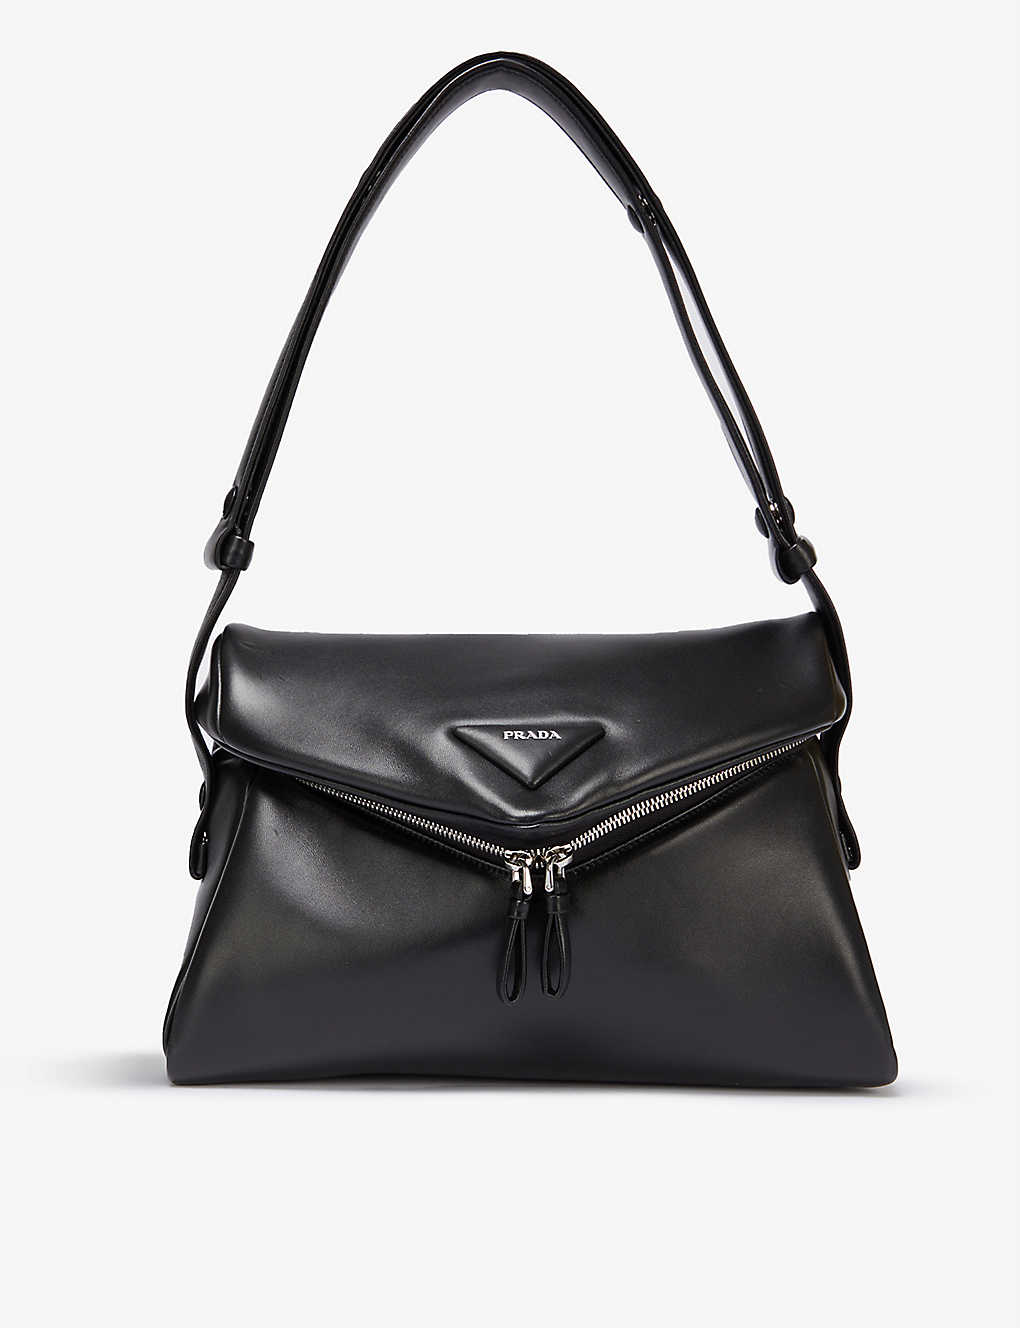 Branded leather hobo bag(9286901)